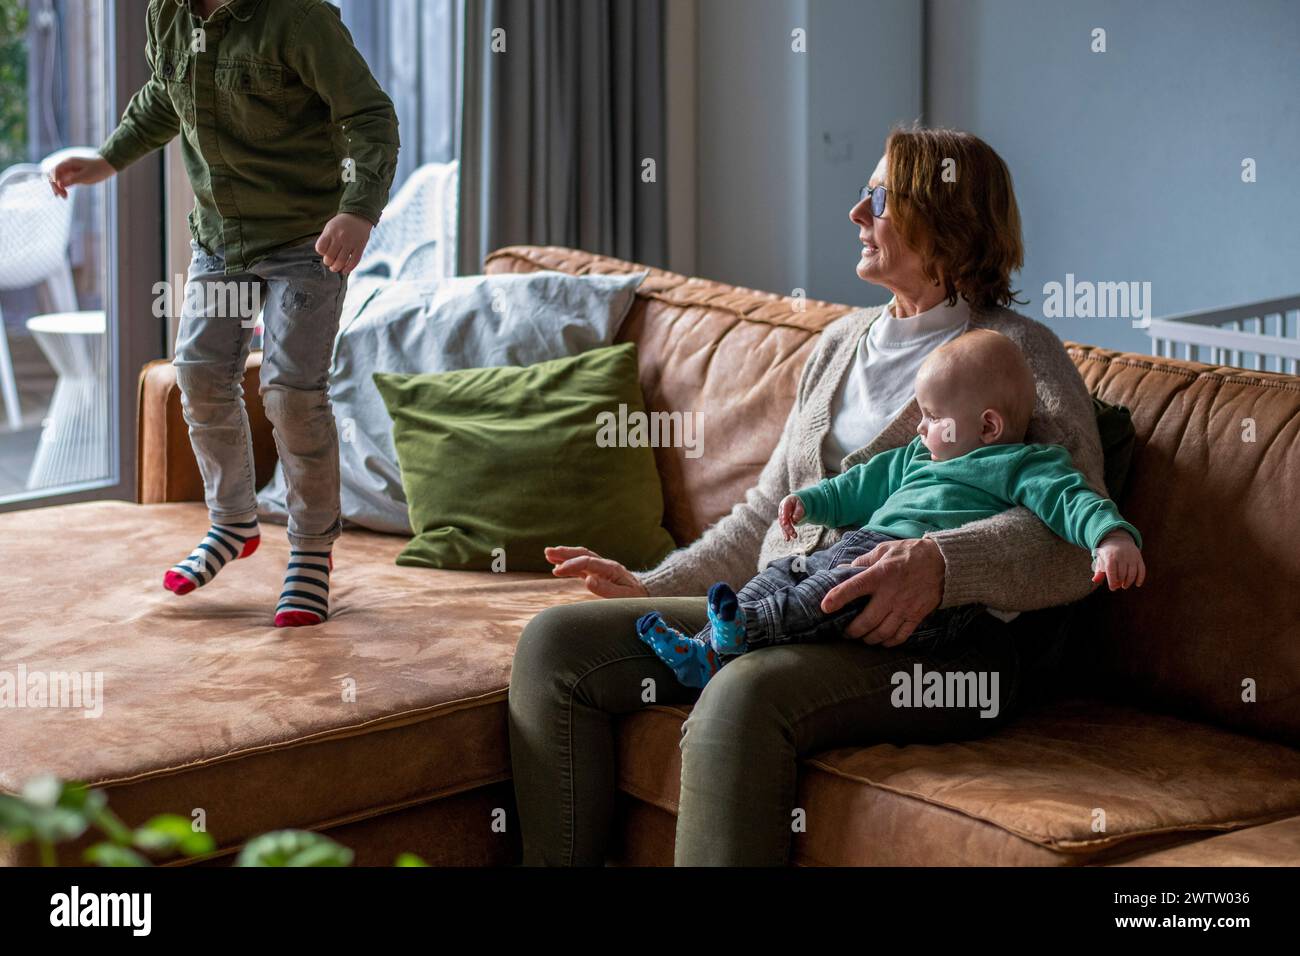 Familienzeit auf einem gemütlichen Sofa mit verspielten Momenten in einem hellen Wohnzimmer. Stockfoto